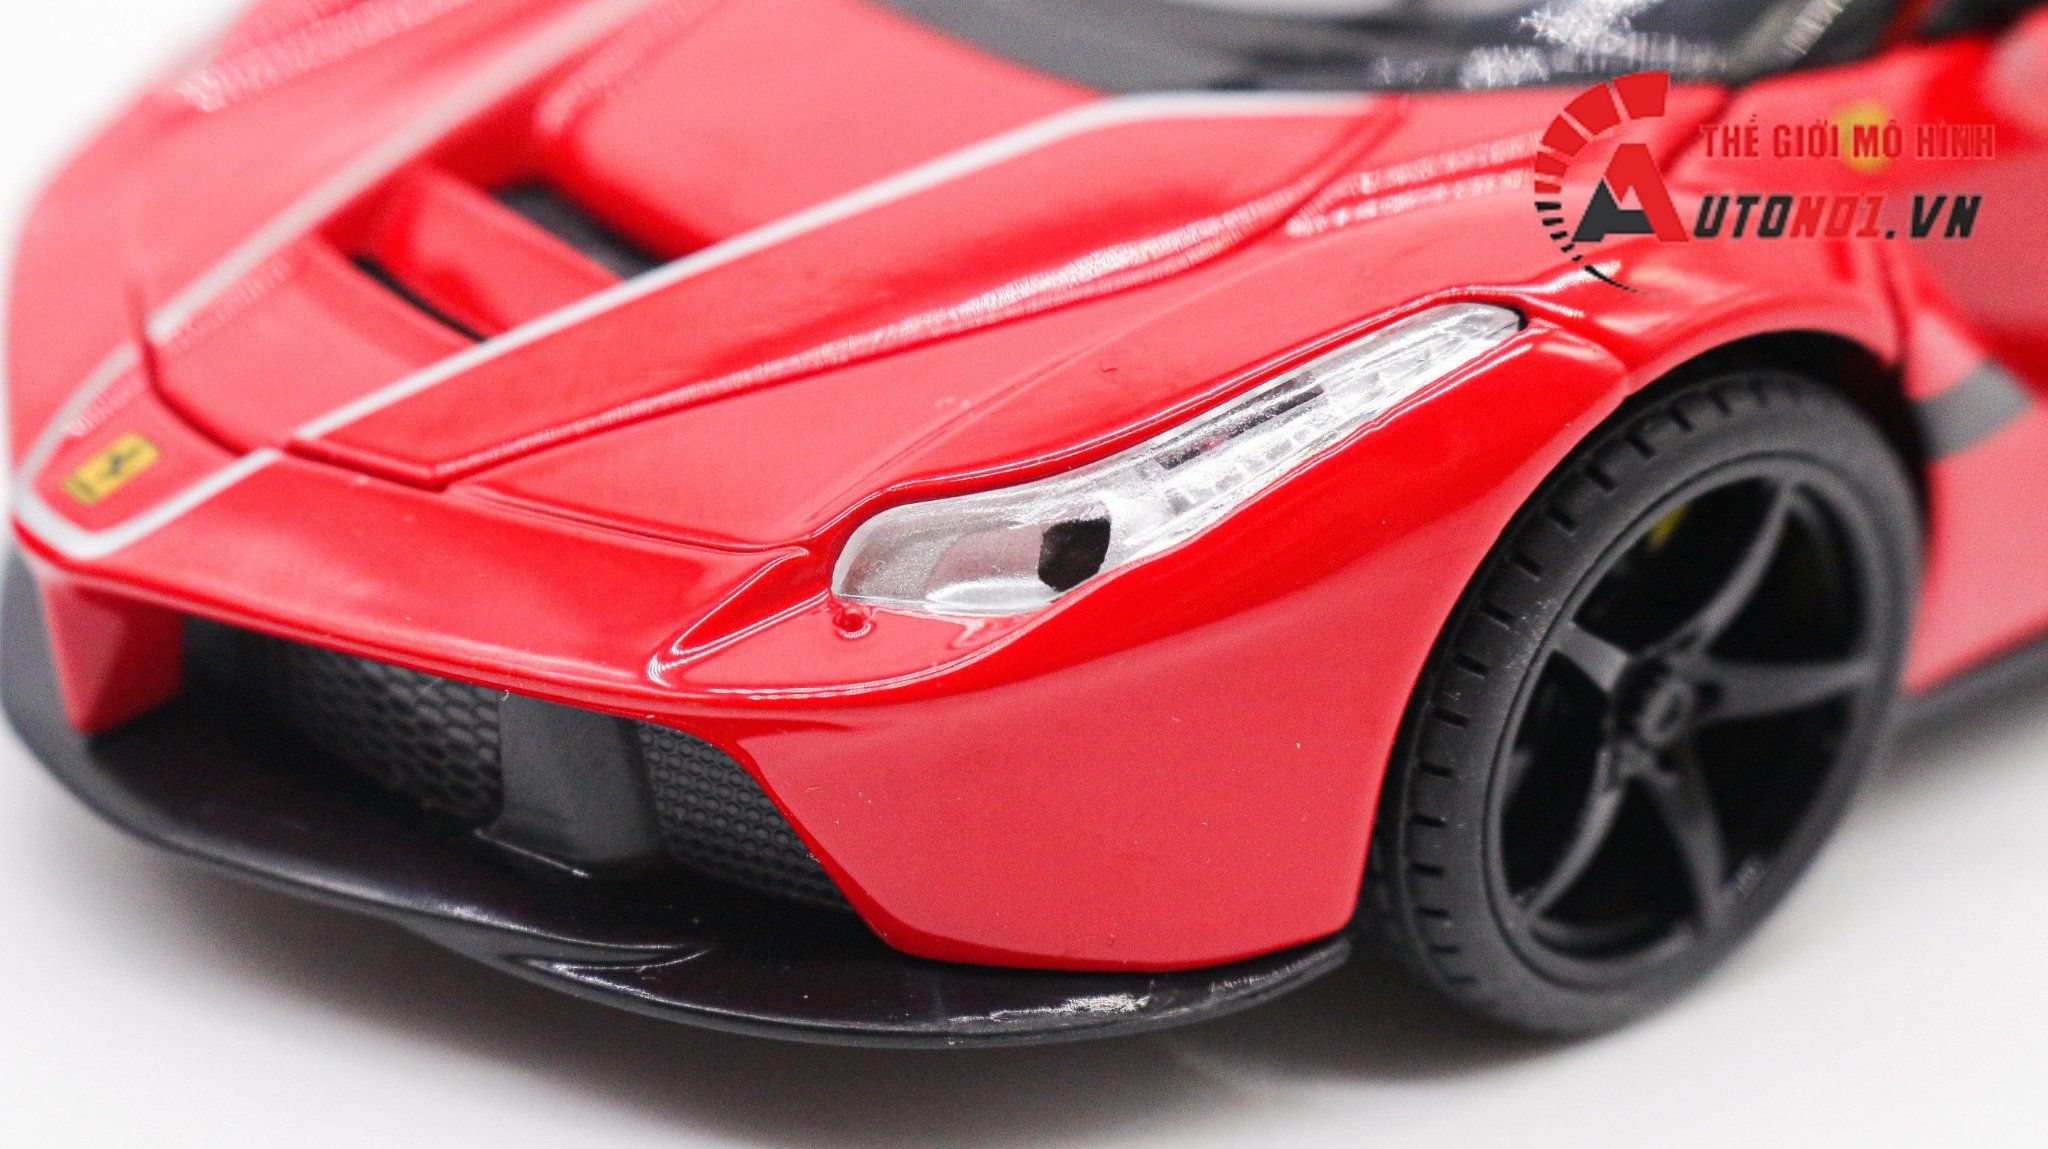  Mô hình xe Ferrari Laferrari Aperta mui trần full open - có âm thanh - có đèn tỉ lệ 1:22 Jiaye Model OT339 